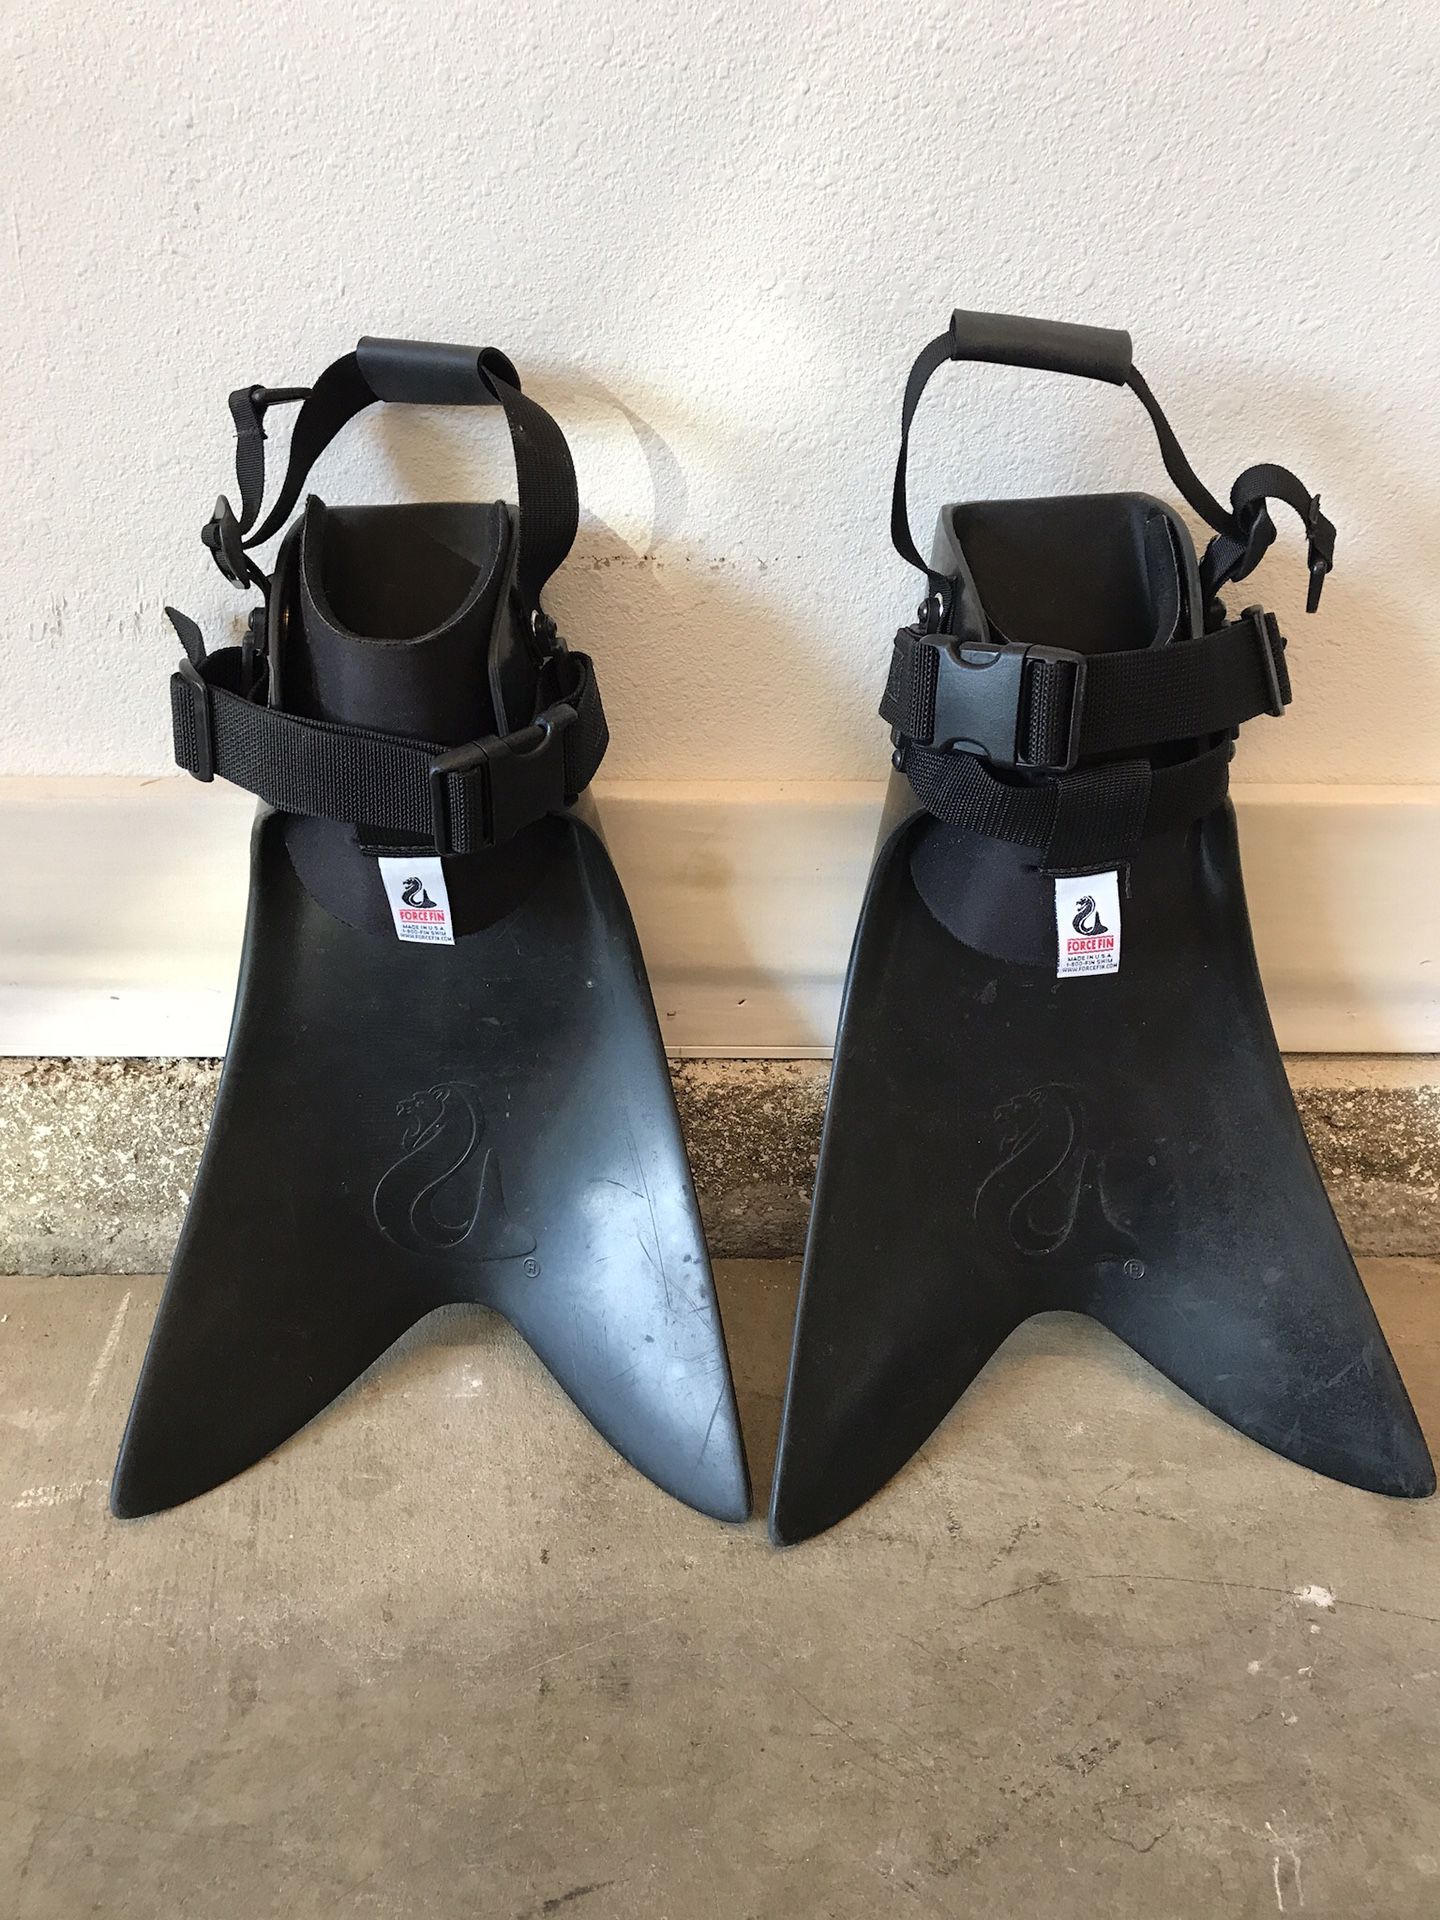 Force fins - Adjustable float tube fishing fins for Sale in La Verne, CA -  OfferUp